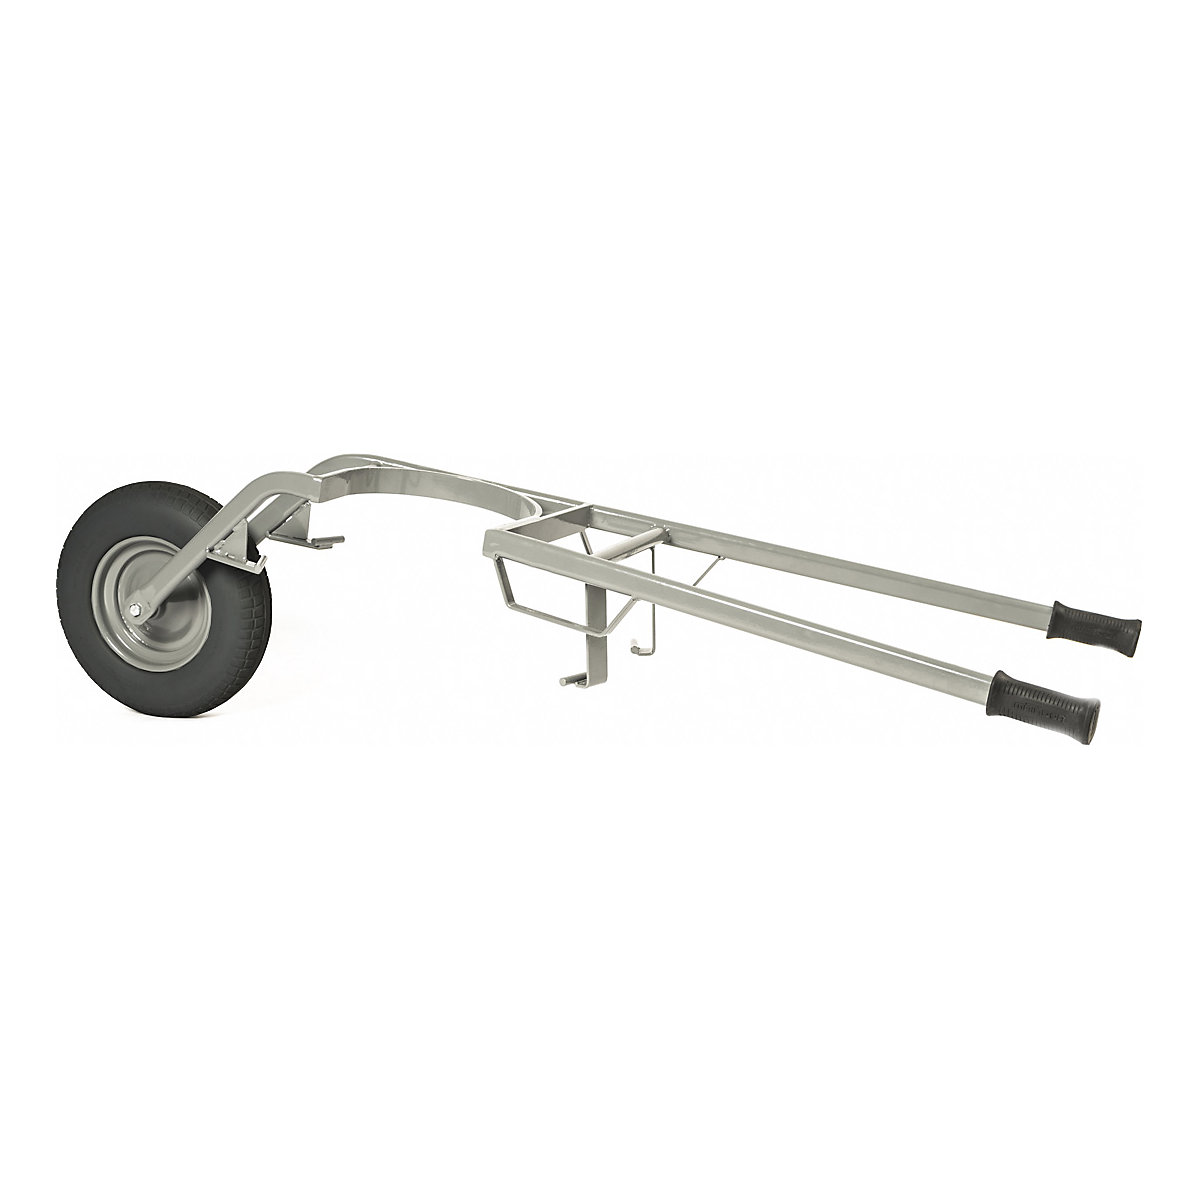 Mortar tub wheel barrow – MATADOR